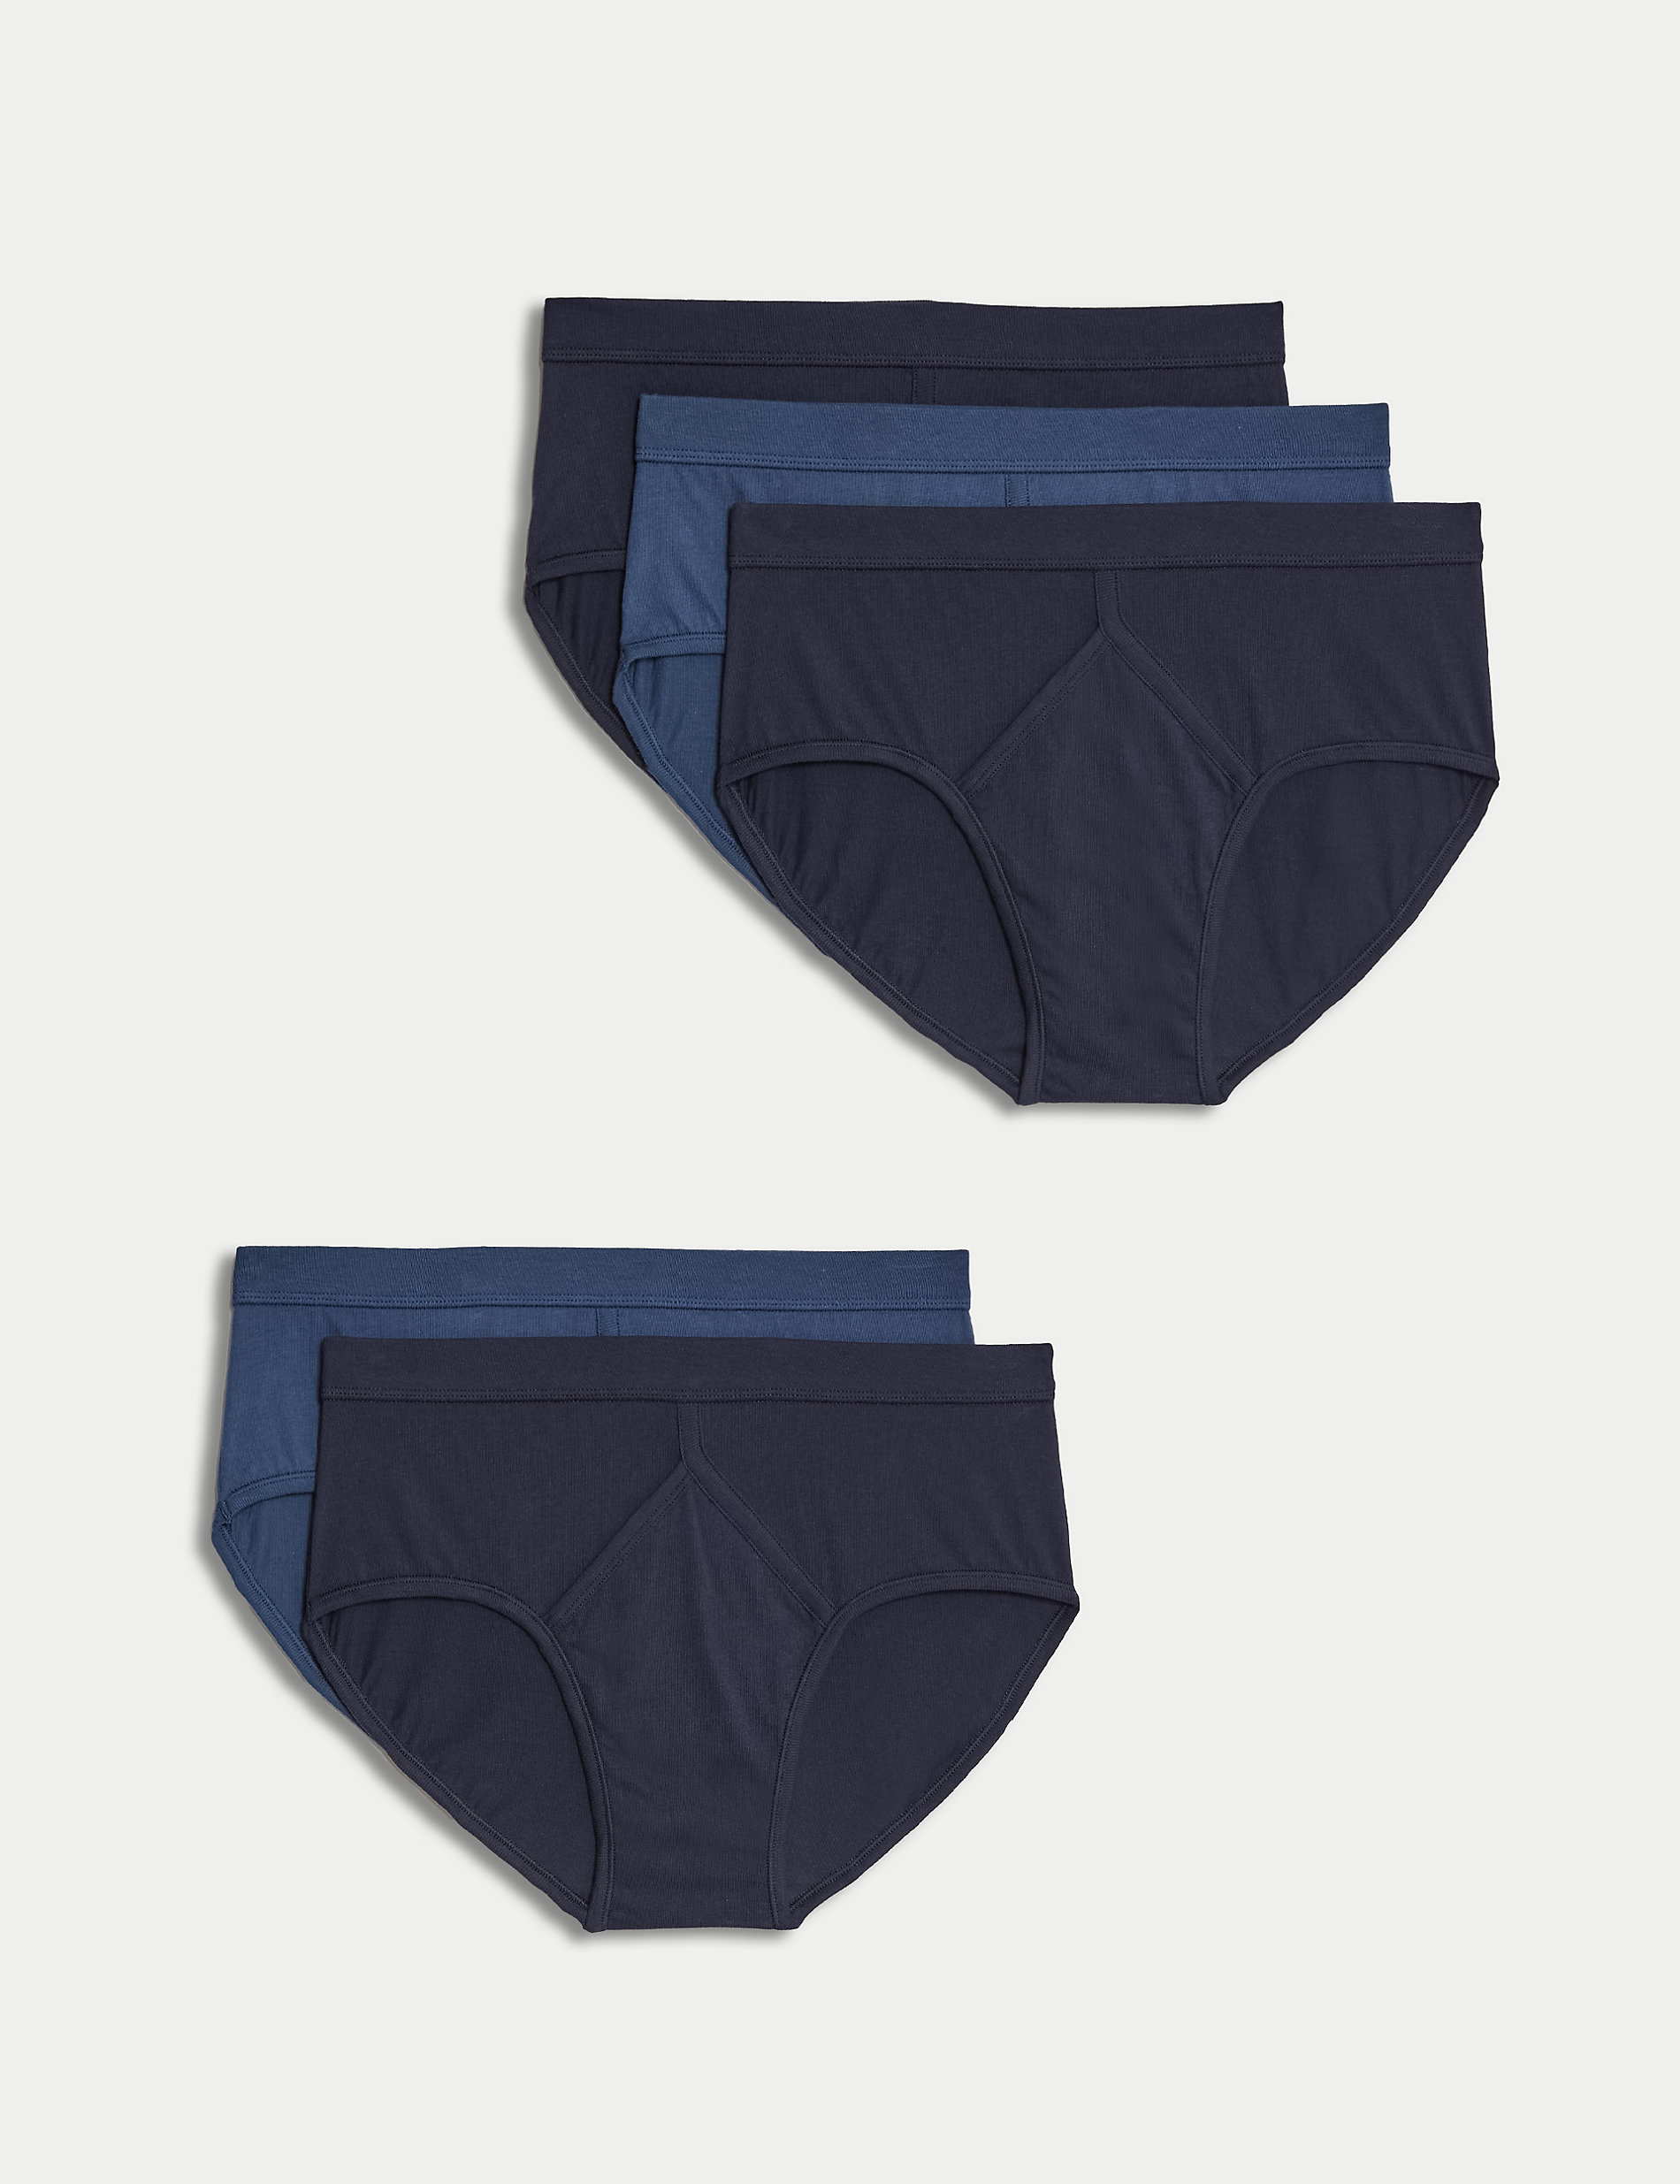 6 Pair Men White Y-Fronts Underpants 100% Pure Cotton Plus Size Brief Underwear